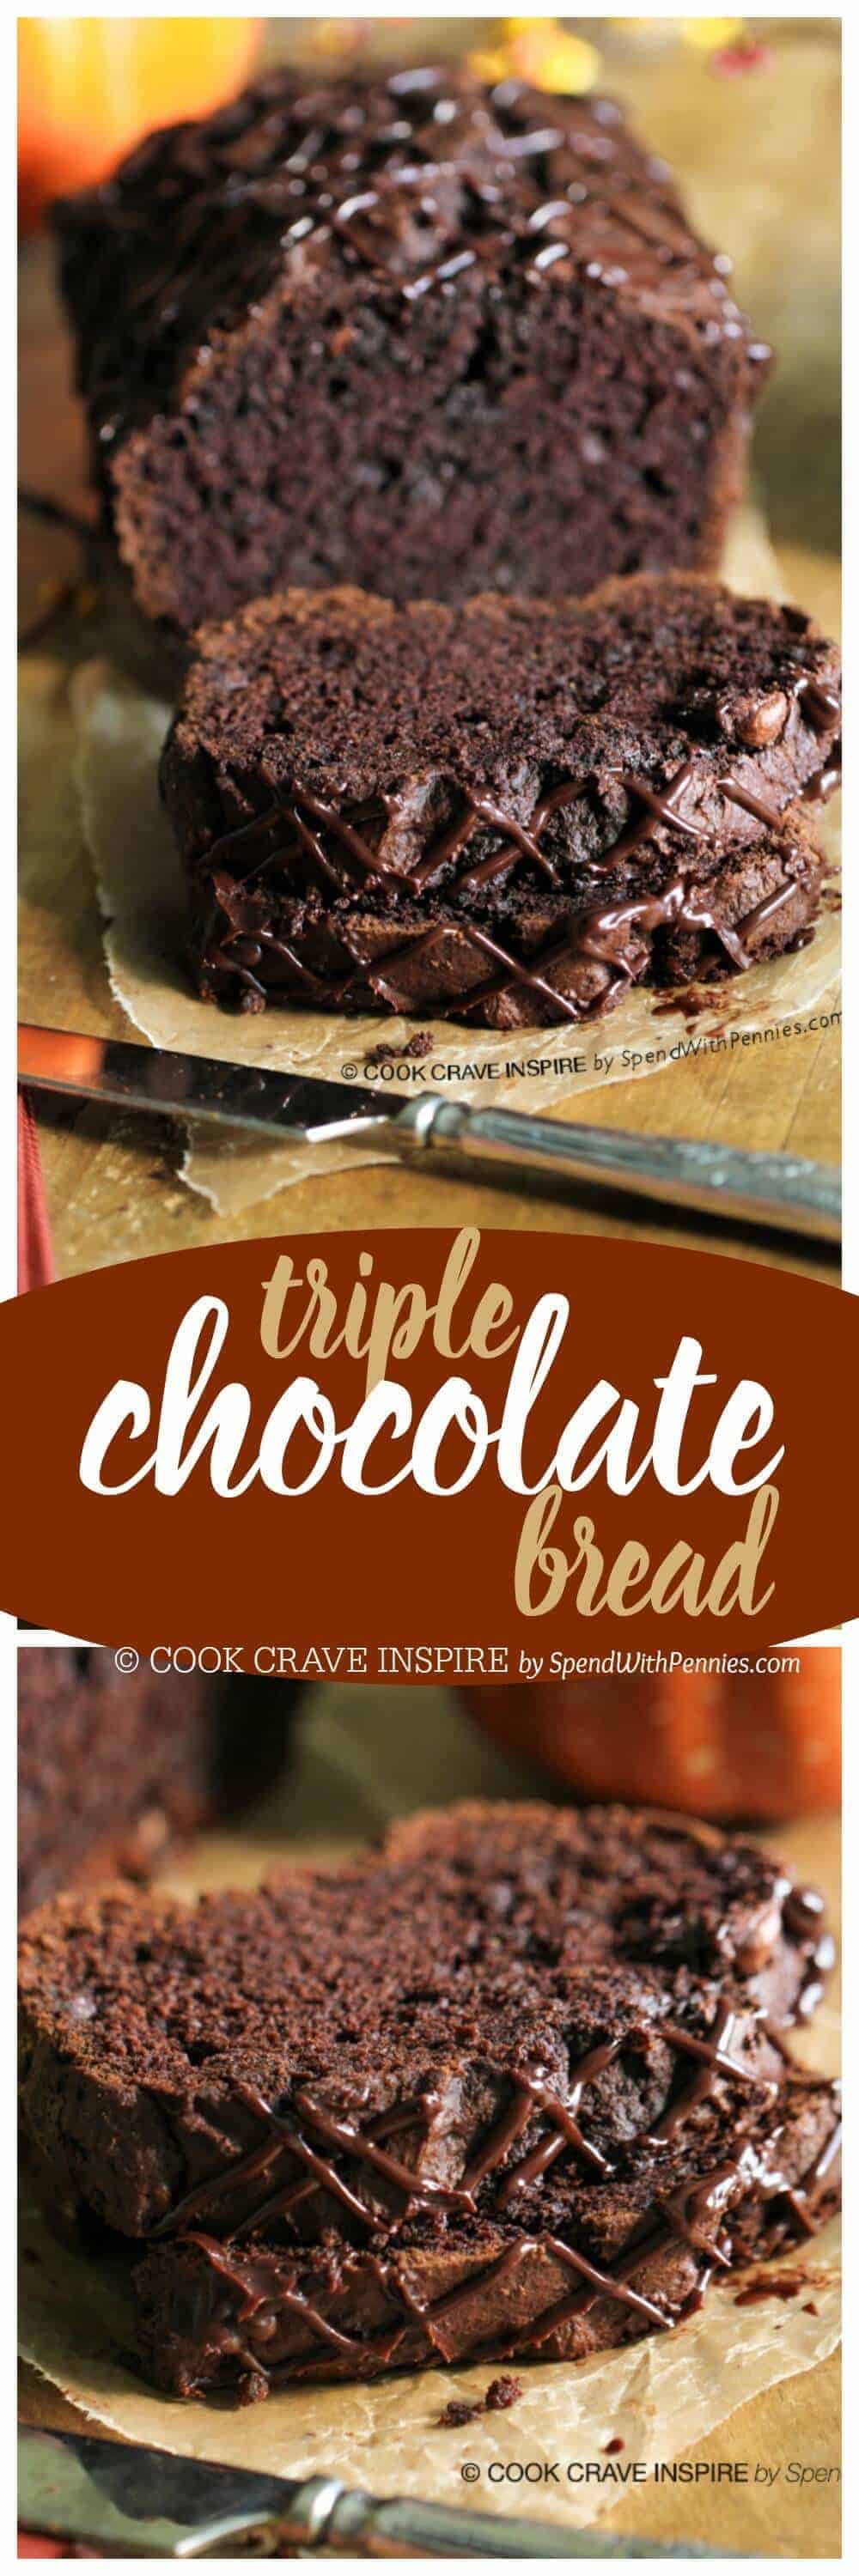 Pan de chocolate triple con título